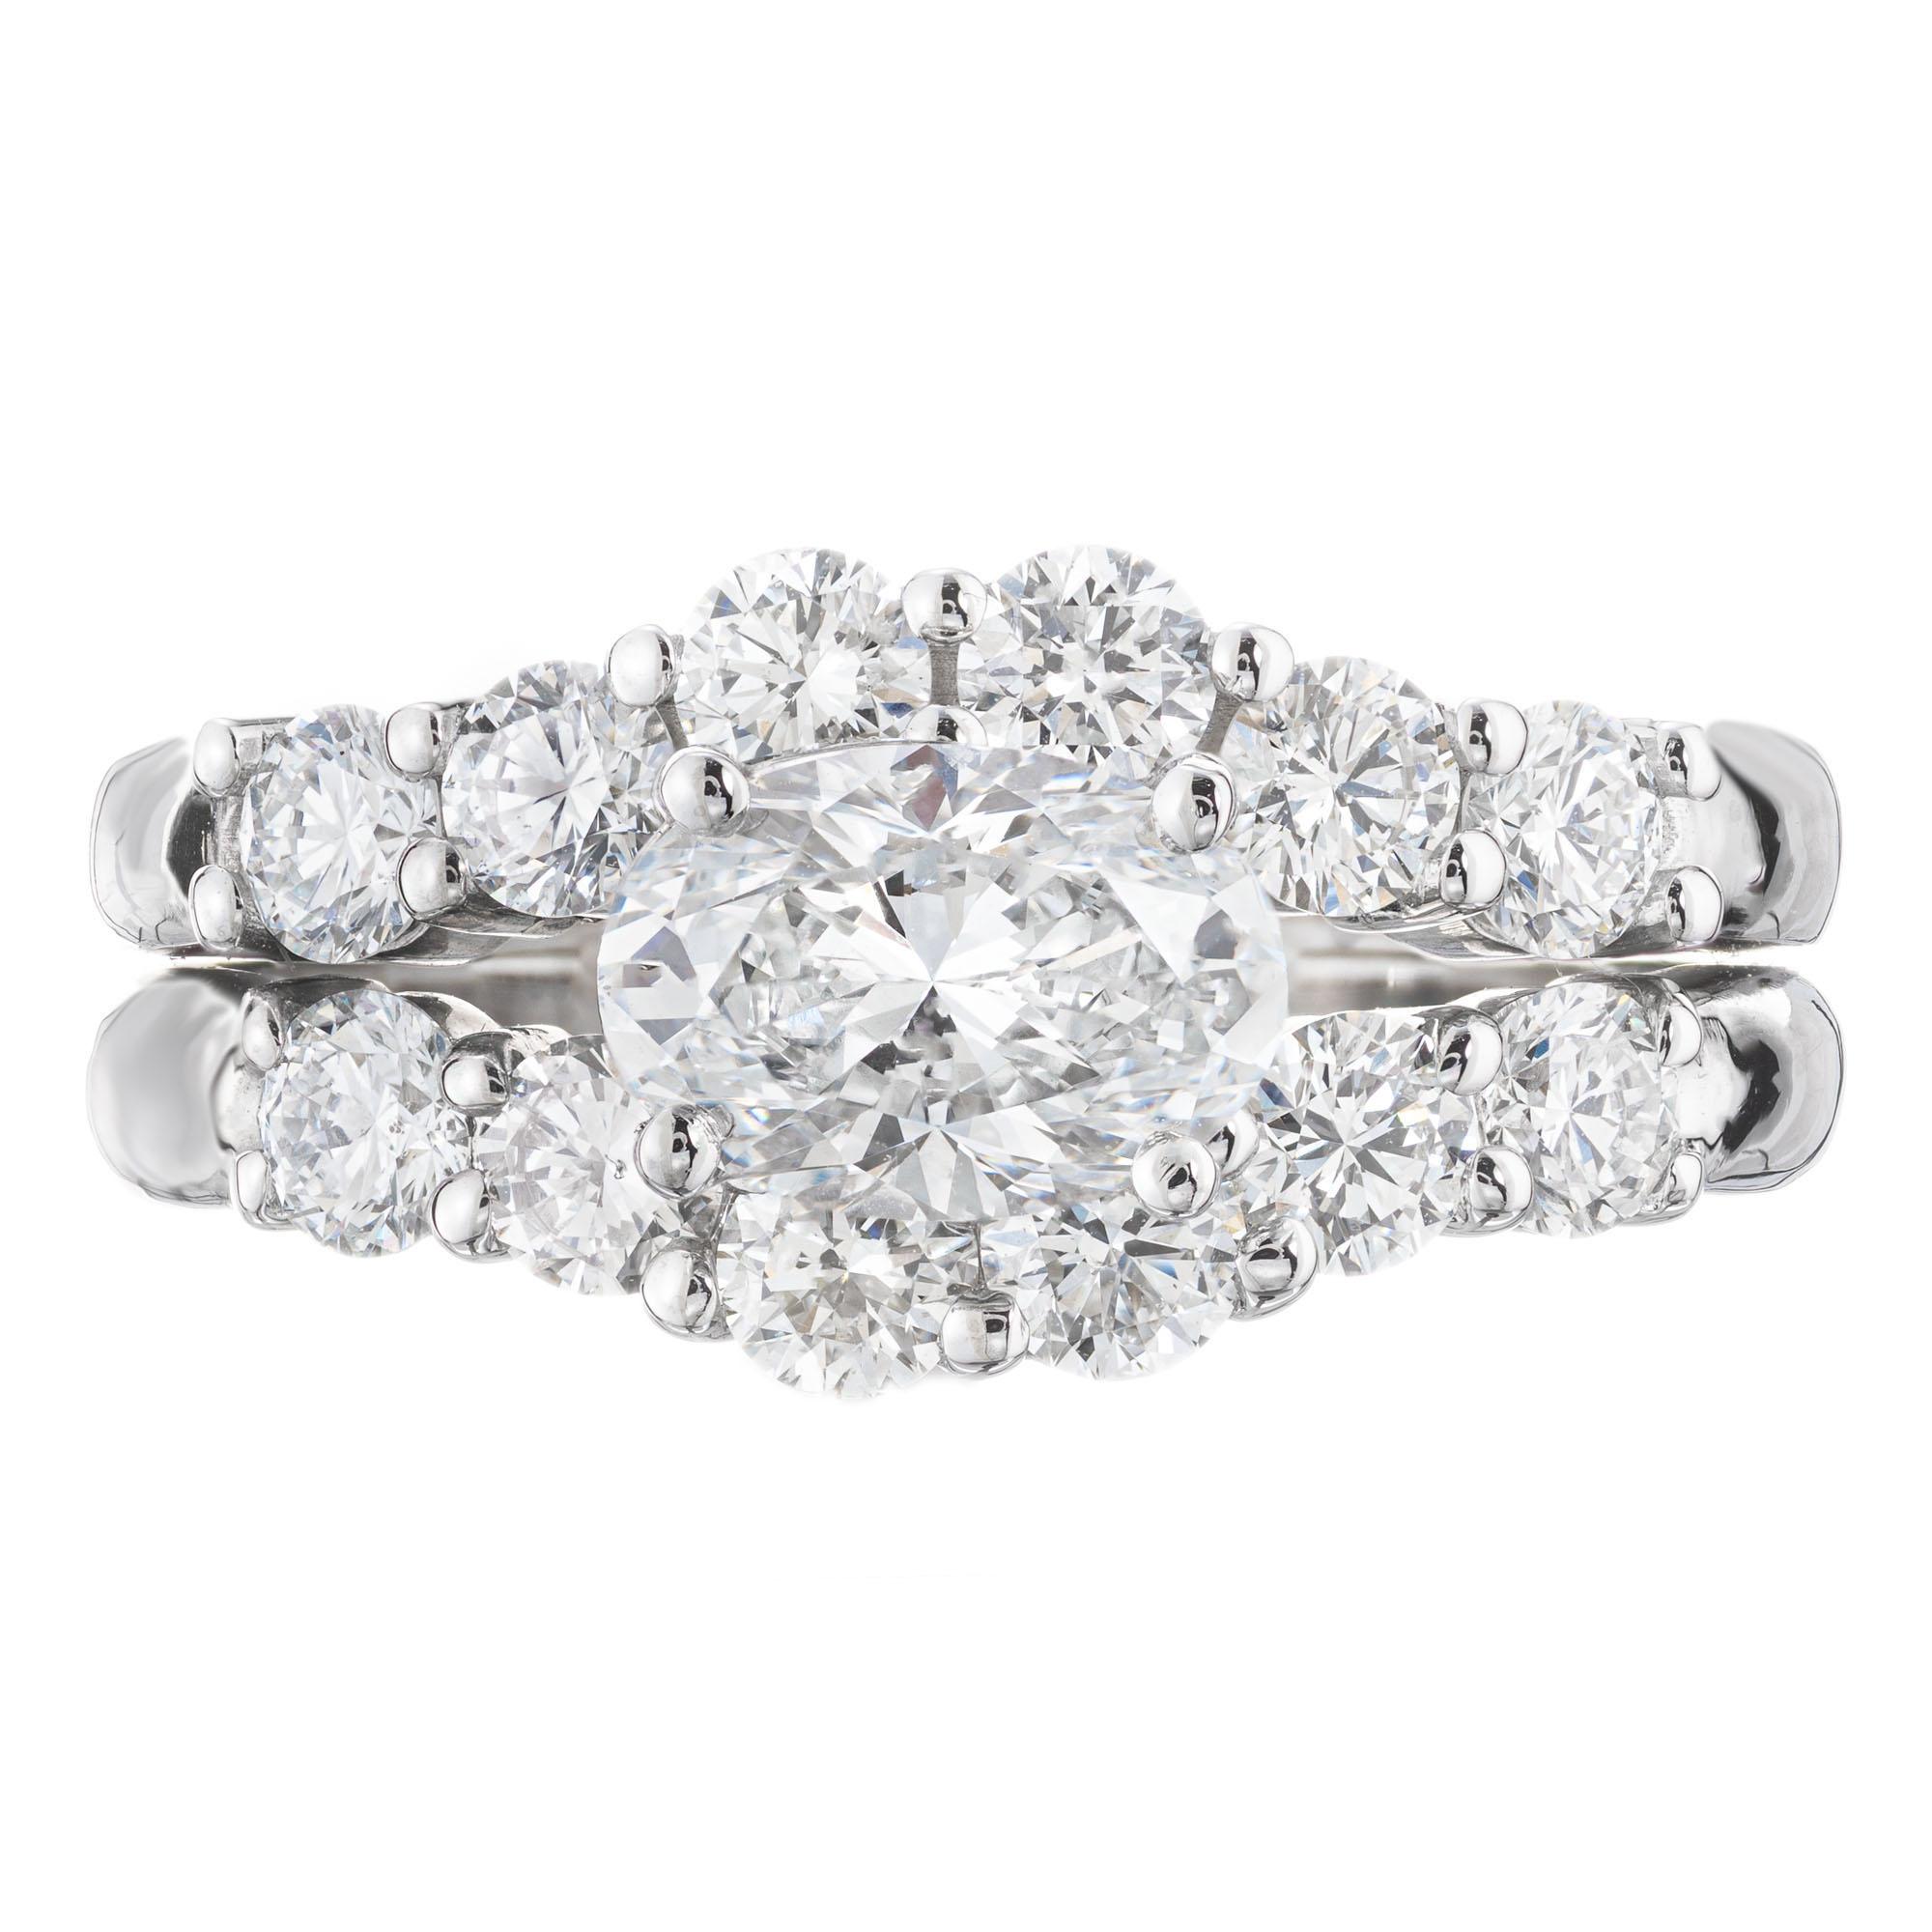 Peter Suchy Diamant-Verlobungsring mit einem ideal geschliffenen, GIA-zertifizierten ovalen Diamanten mit einem Gewicht von 1,01 Karat als Mittelstein. Der Stein ist seitlich in einer gewölbten Platinfassung mit 12 runden Diamanten im